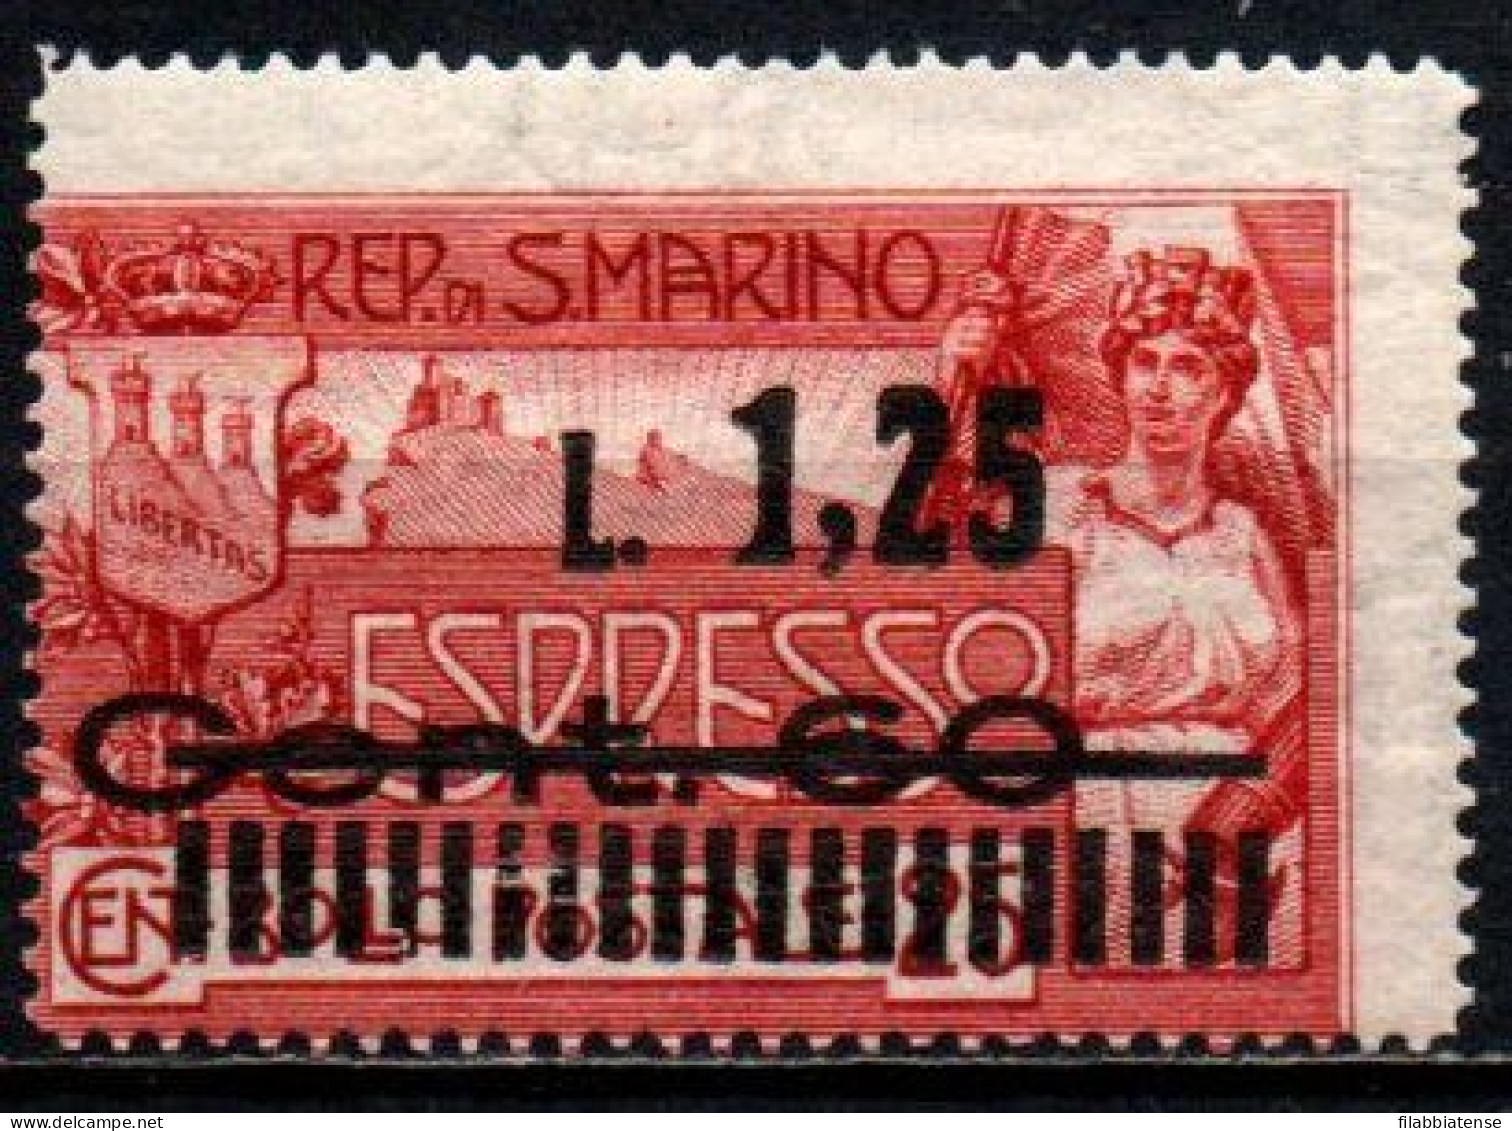 1927 - San Marino E 6 Soprastampato ++++++ - Unused Stamps